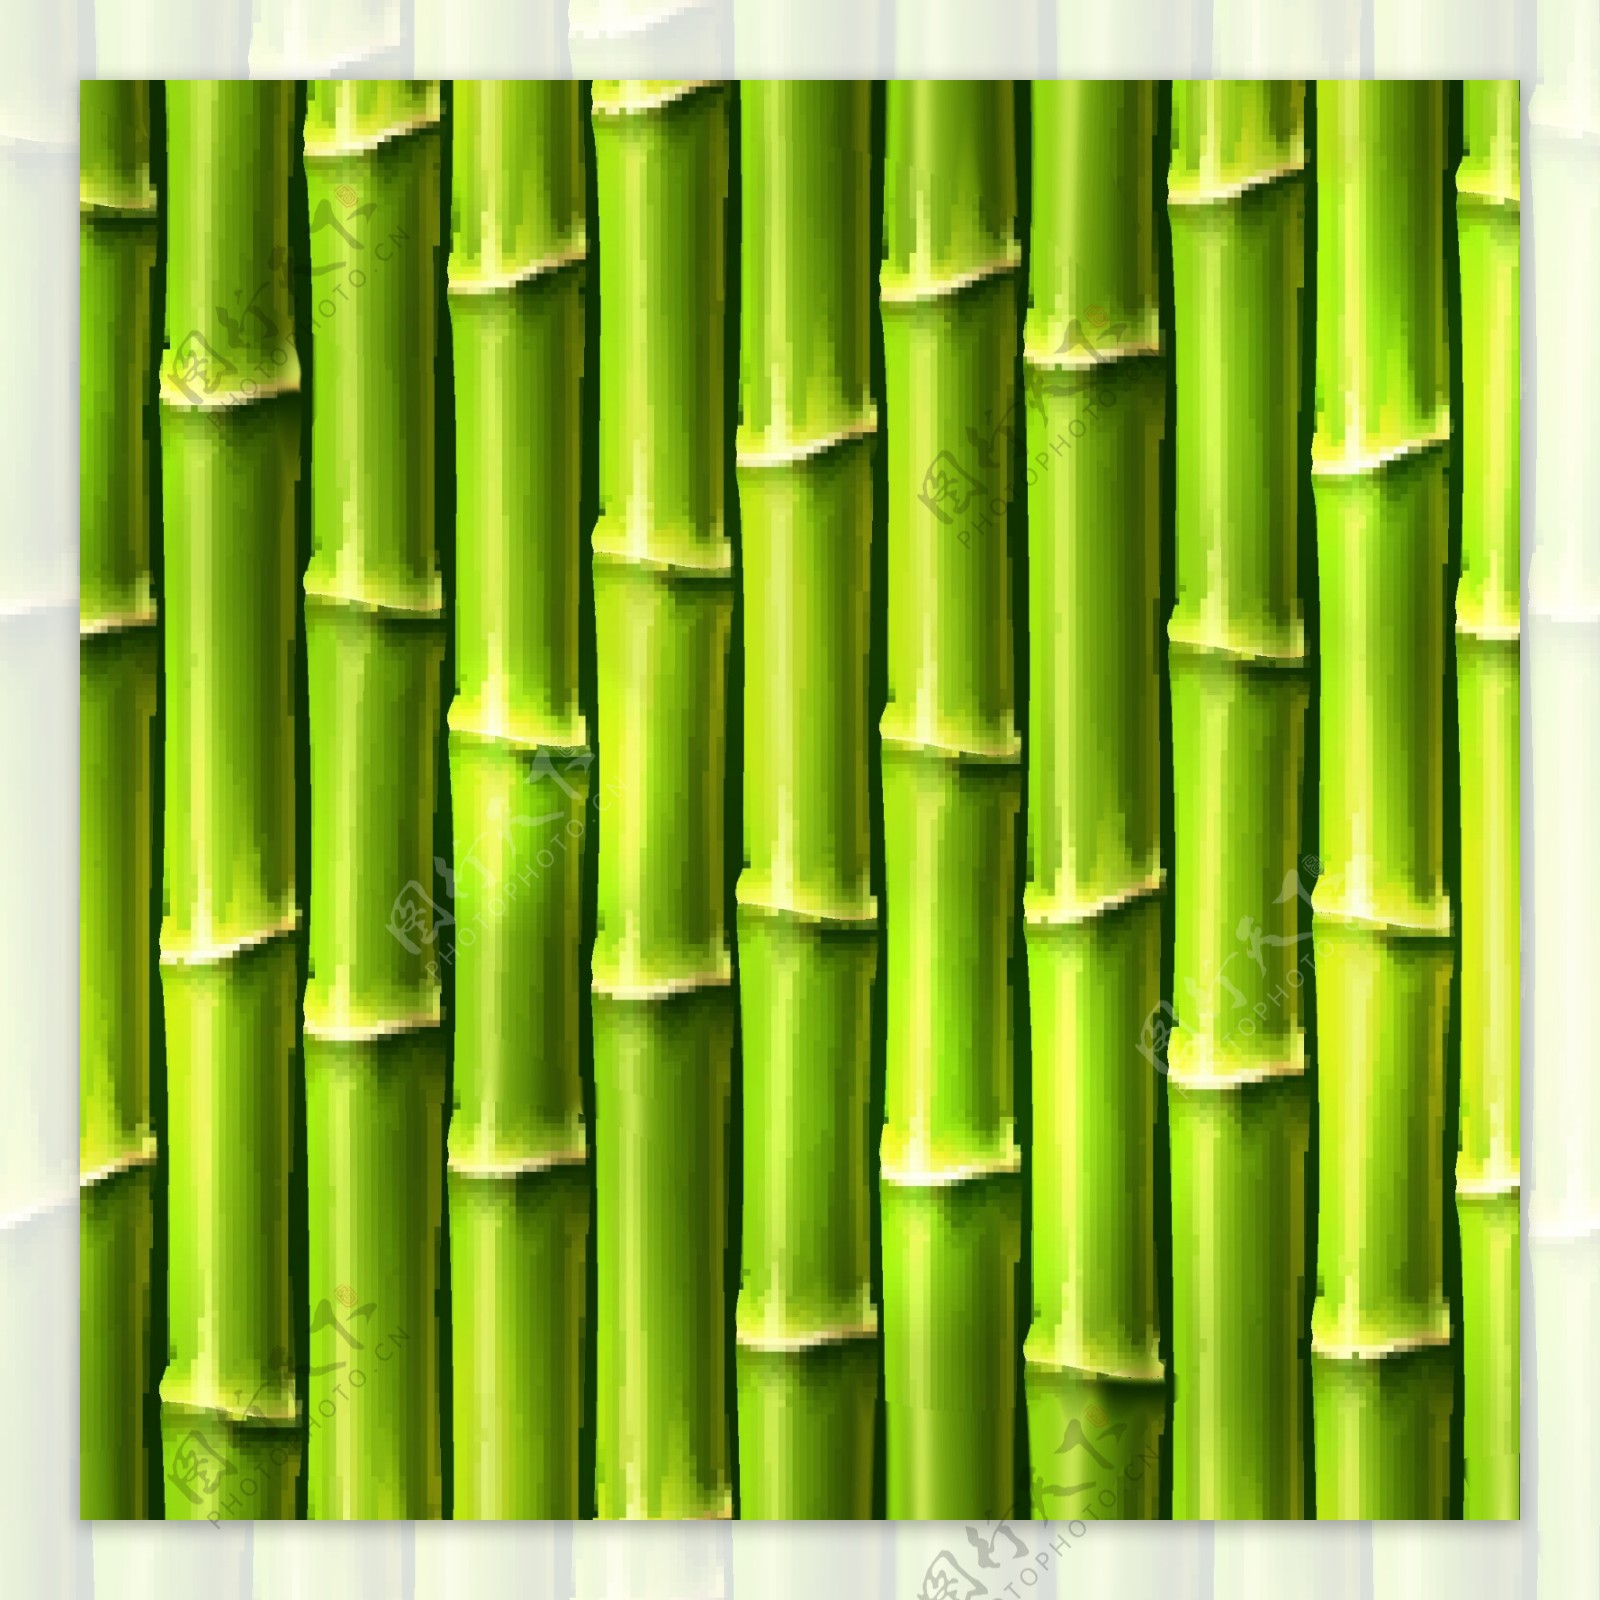 竹子背景木头背景图片